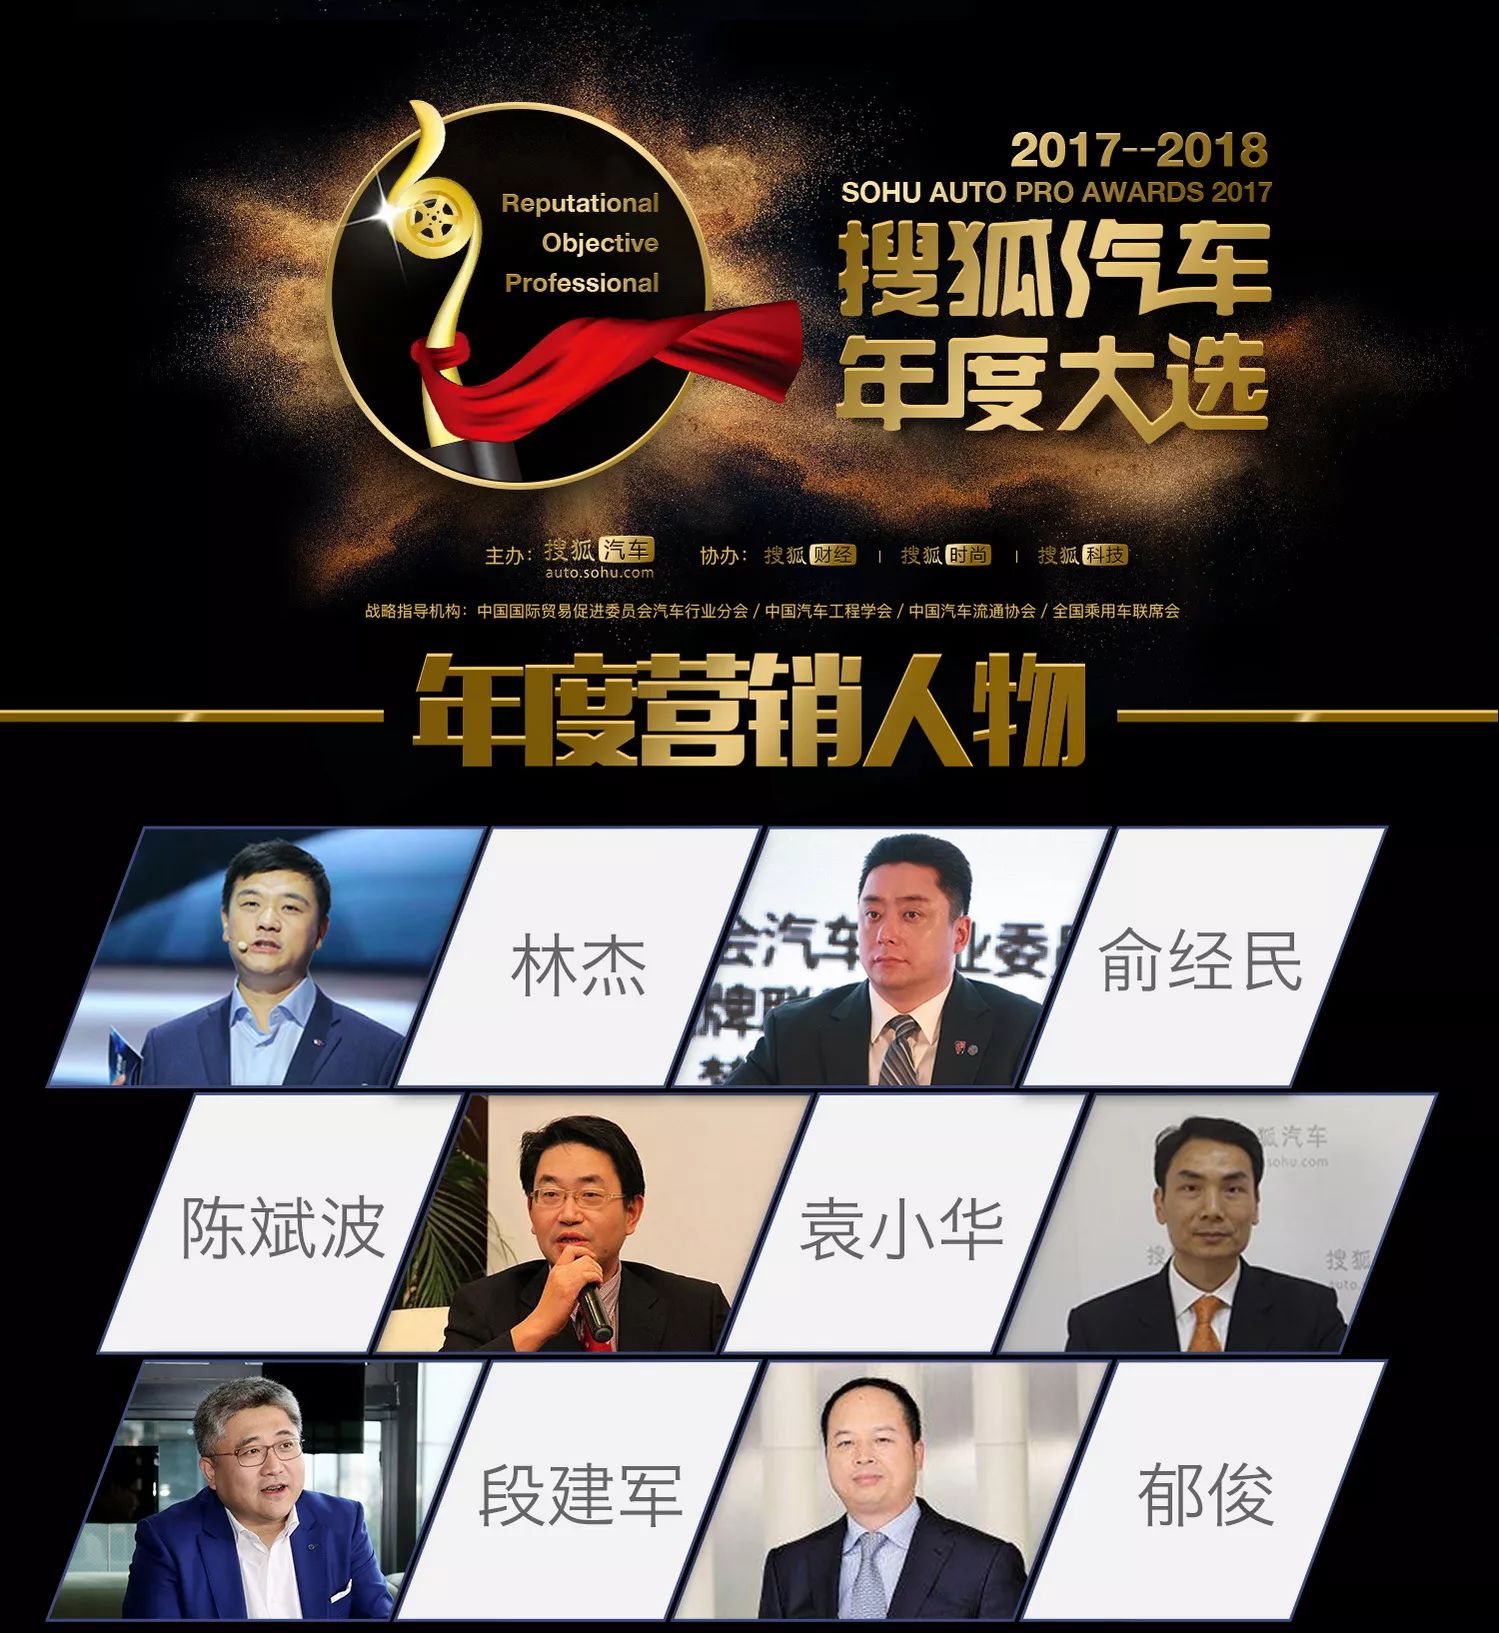 2017搜狐汽车年度大选投票正式启动